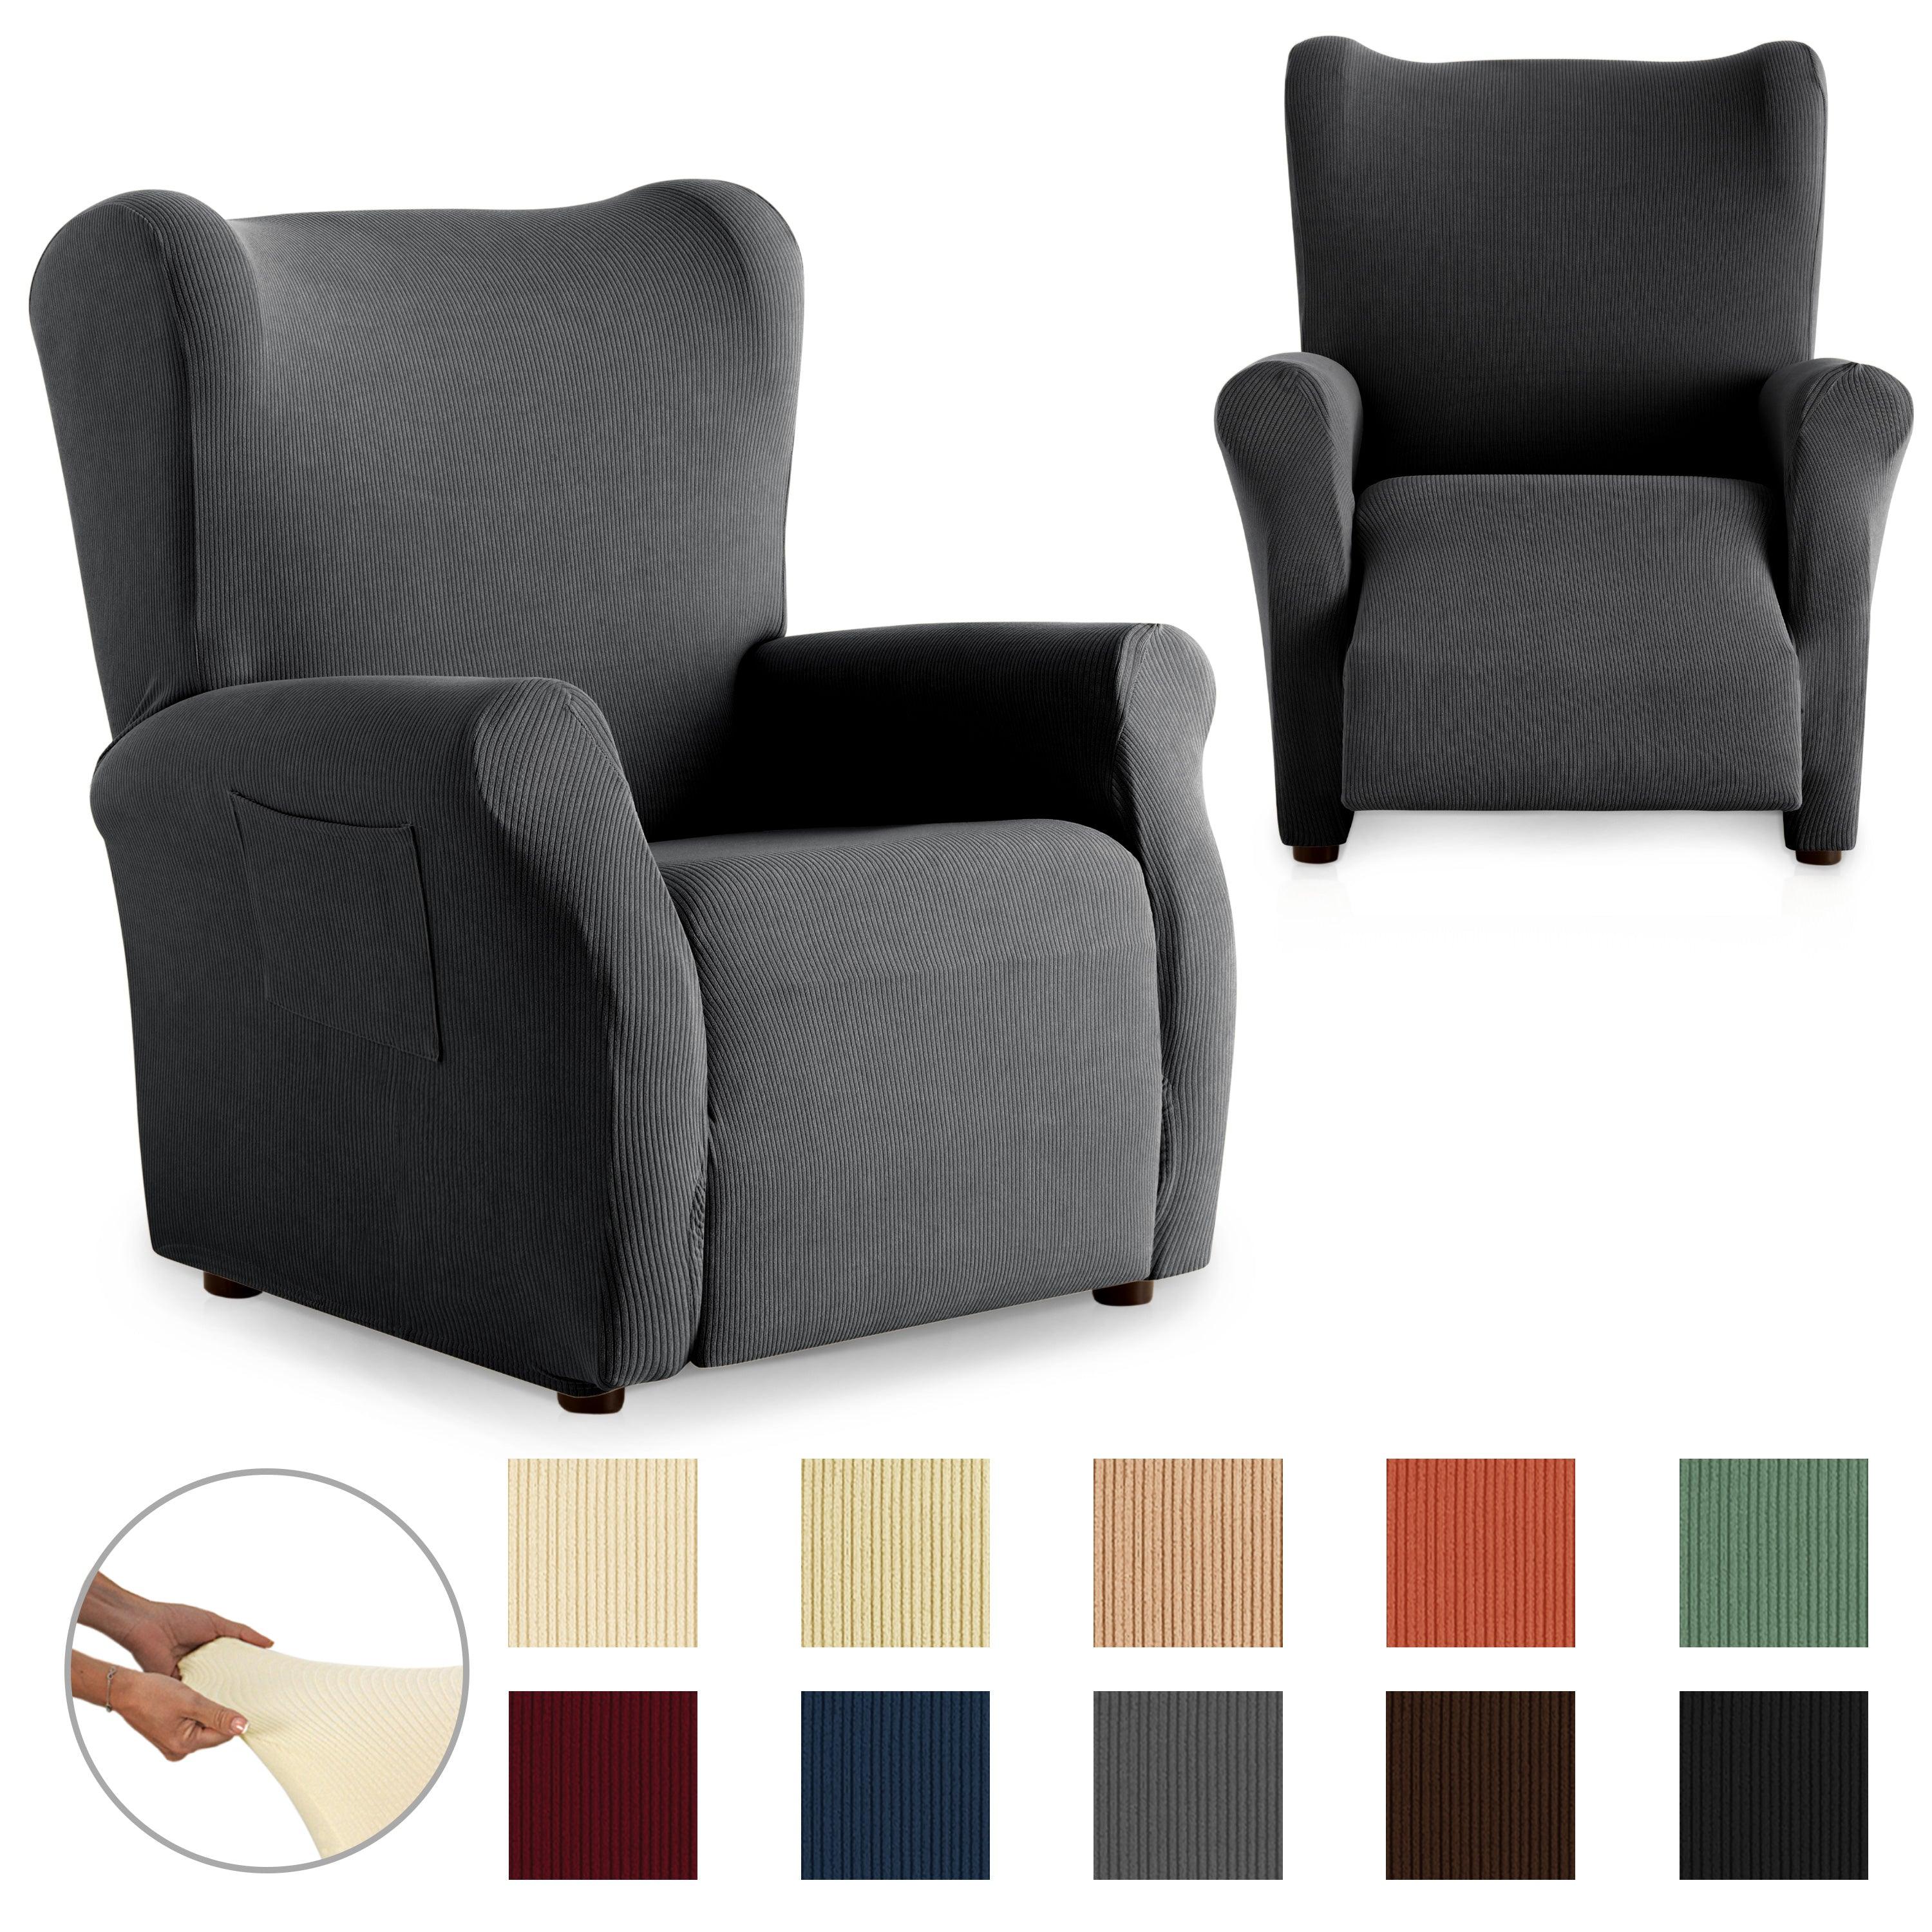 Funda de sillón relax elástica adaptable beige 70 - 110 cm RUSTICA